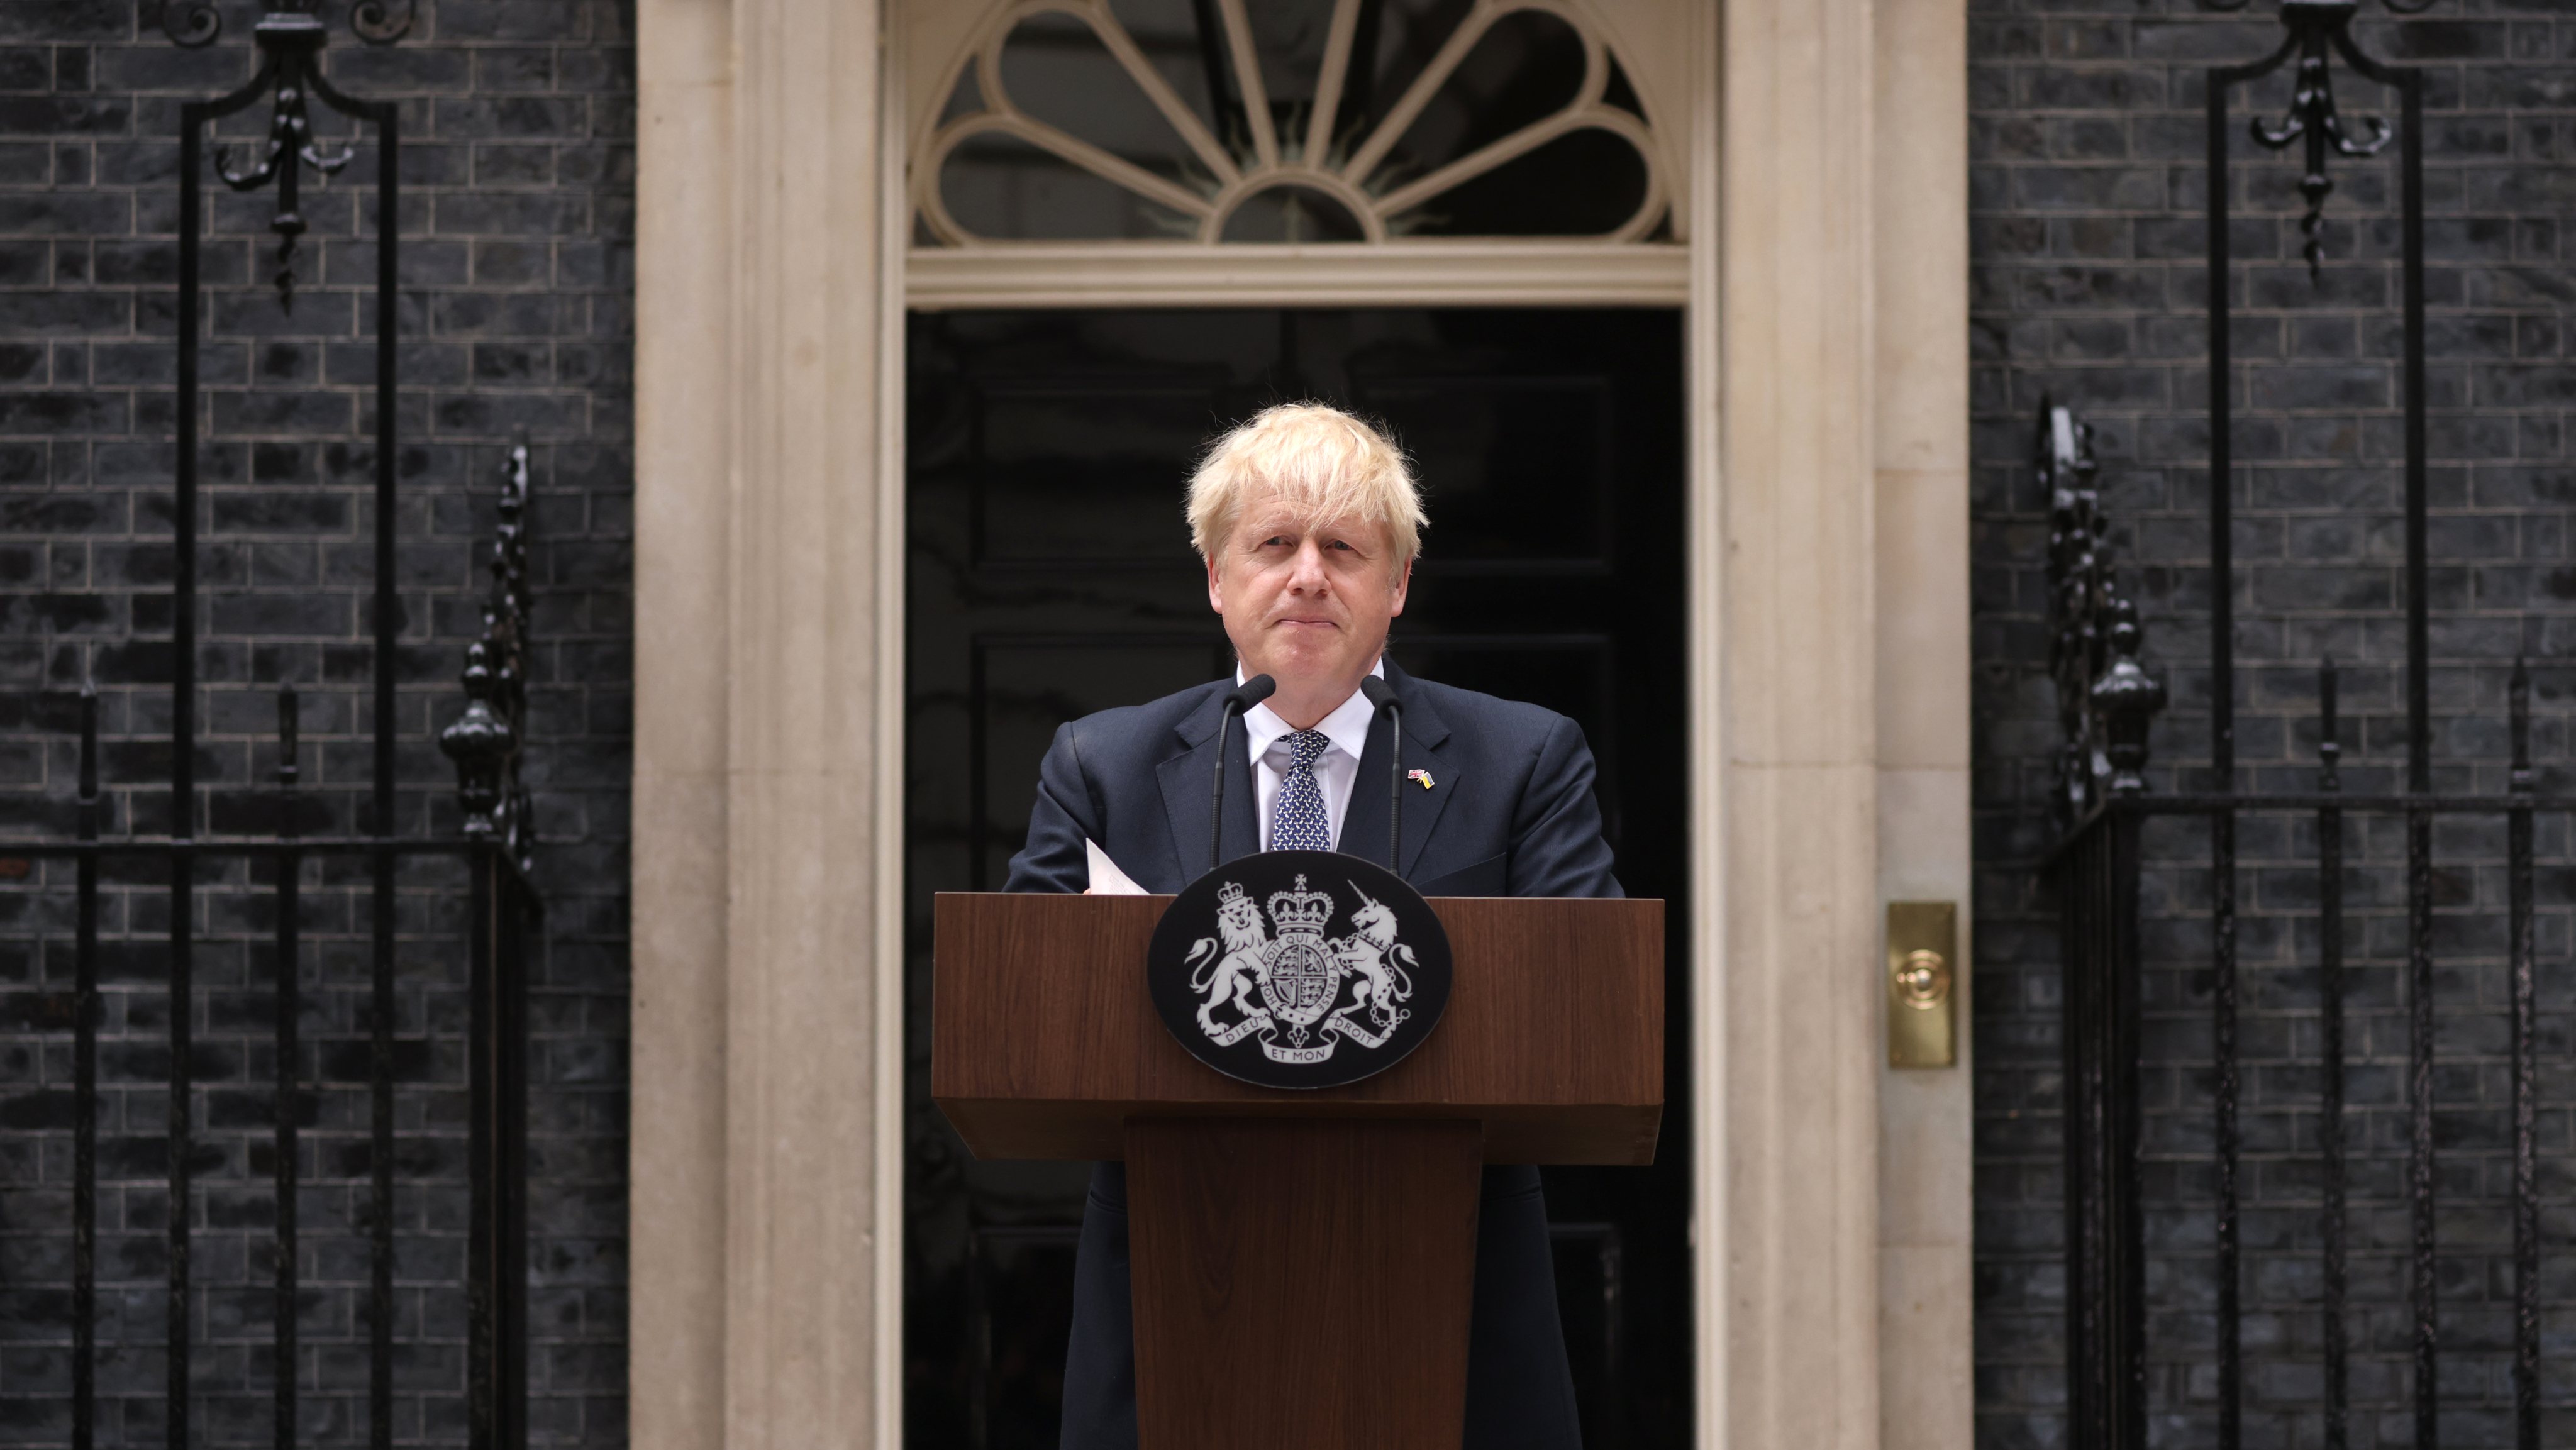 Boris Johnson demite-se depois de uma crise política desencadeada por mais um escândalo no seu executivo: a promoção de um membro do governo acusado de assédio sexual